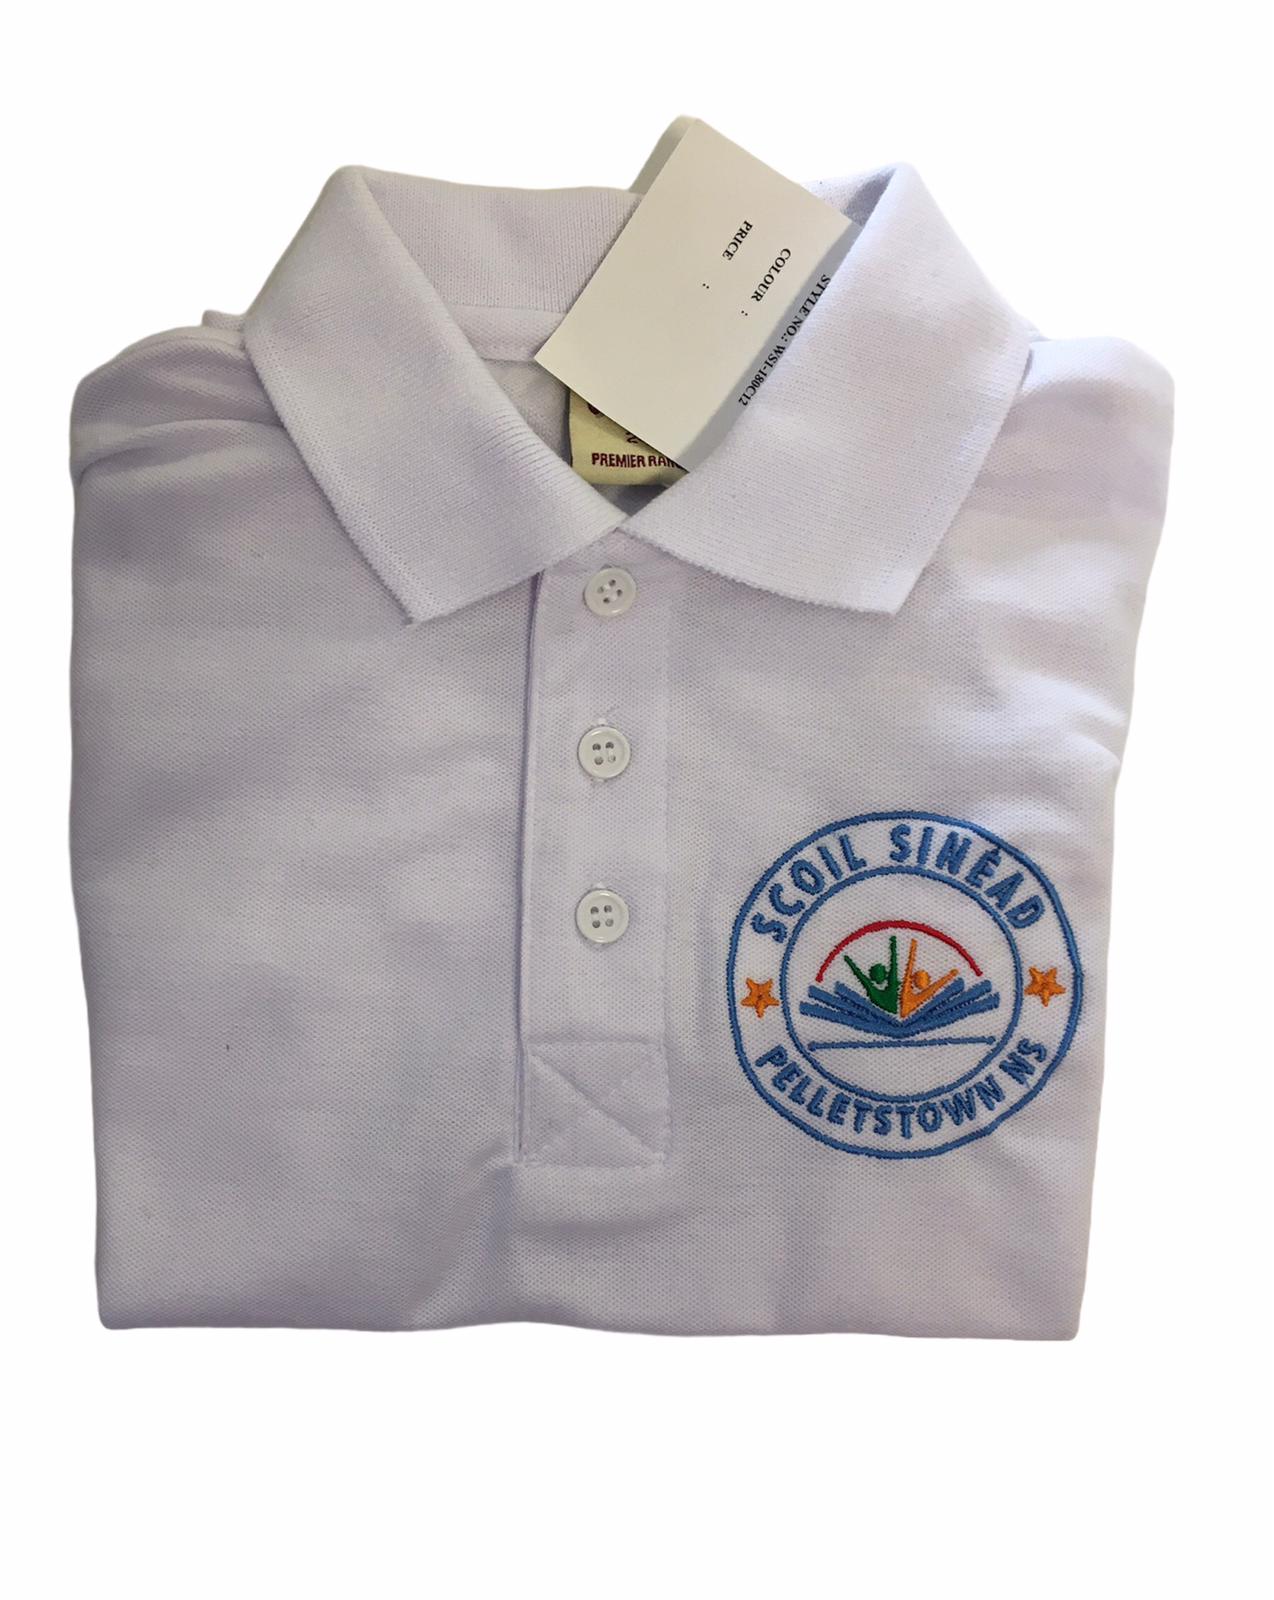 Scoil Sinead Pelletstown Polo Shirt